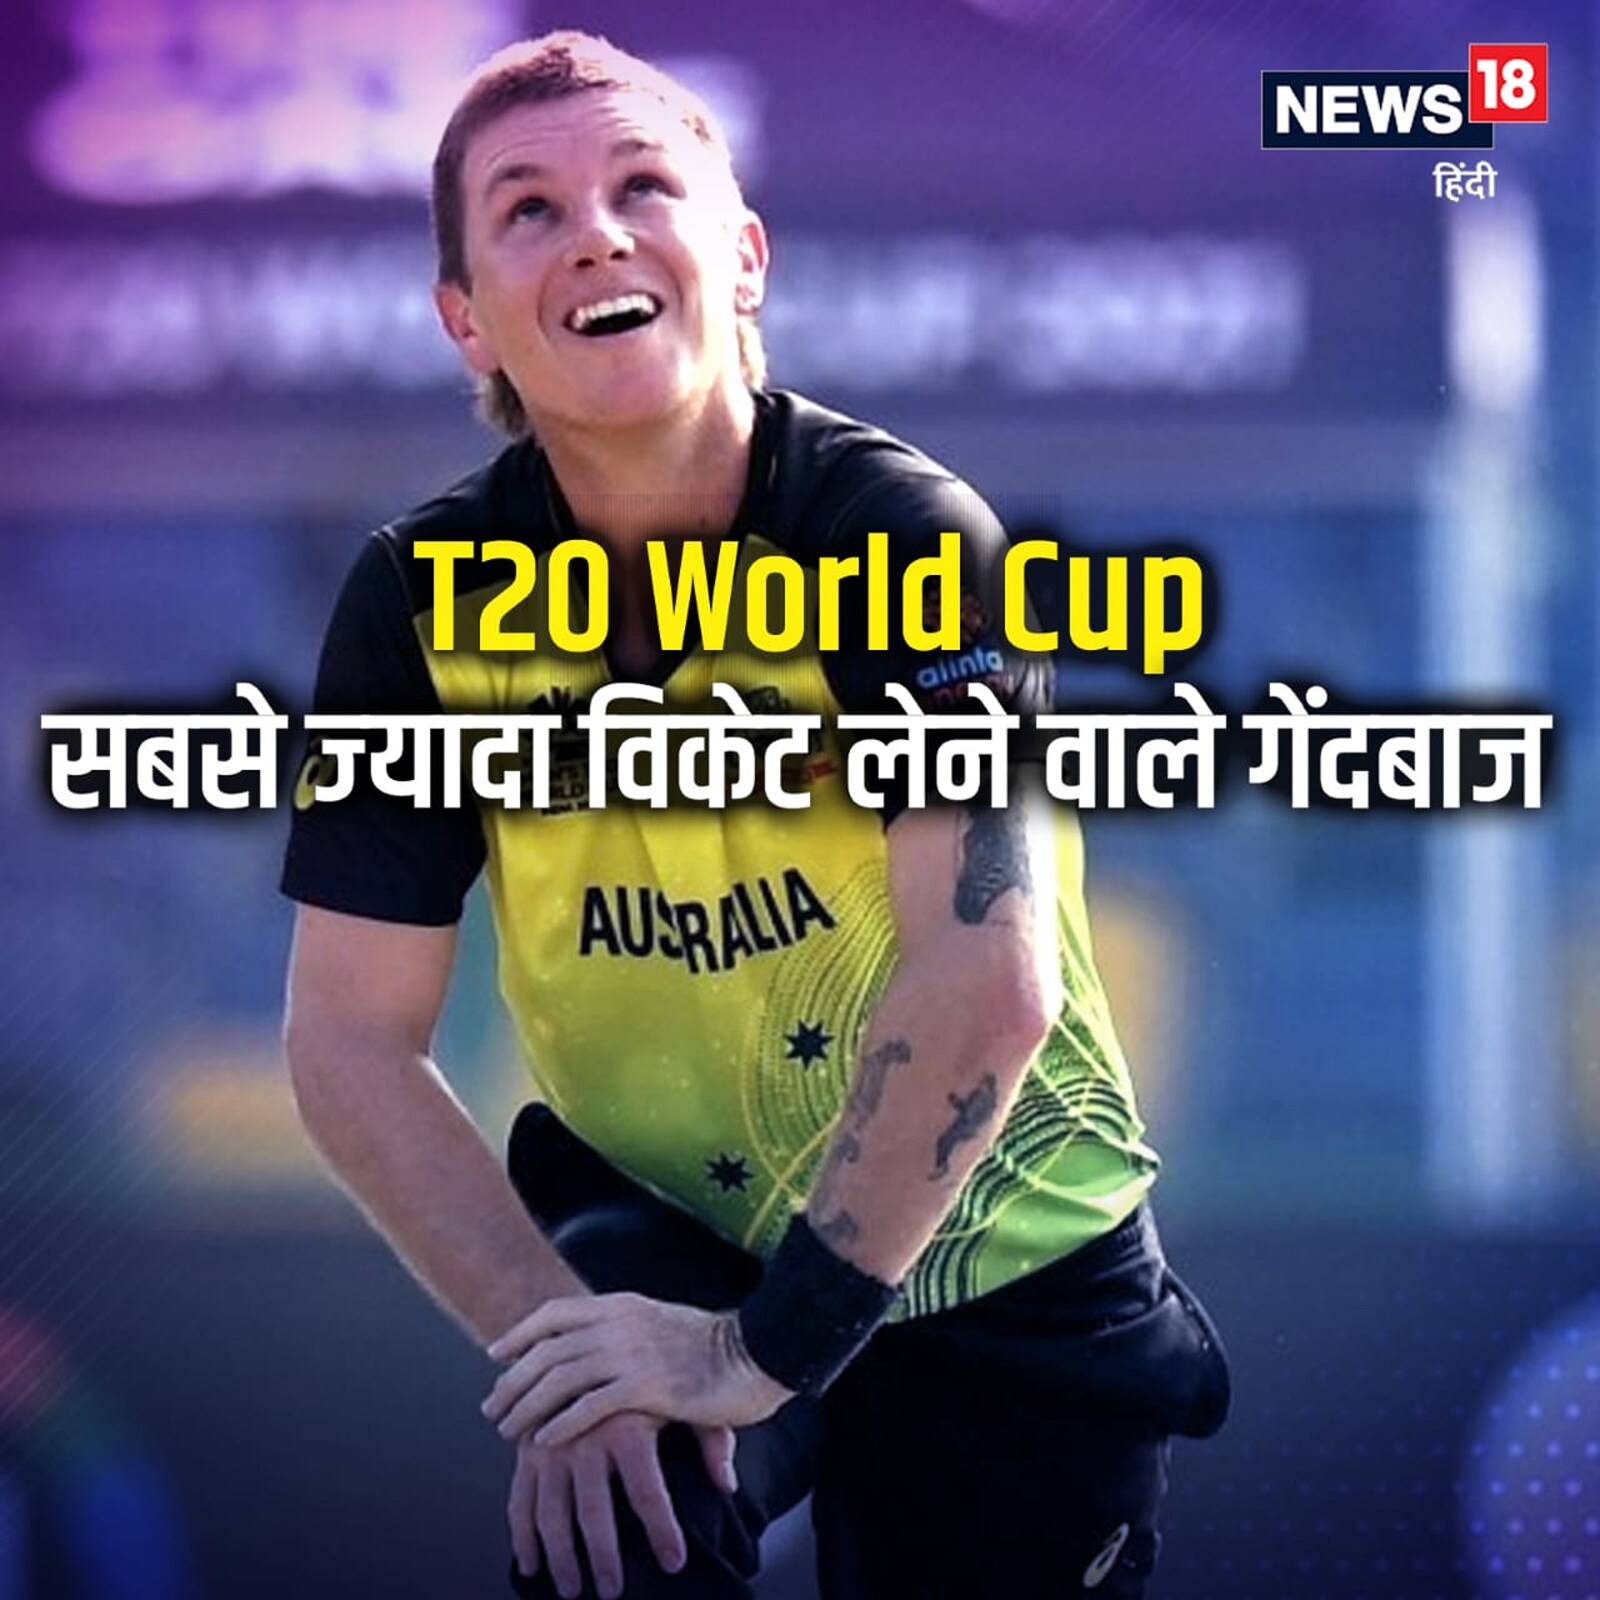  टी20 वर्ल्ड कप (T20 World Cup-2021) में गेंदबाजों ने भी धमाल मचाया. ऑस्ट्रेलिया ने फाइनल में न्यूजीलैंड को 8 विकेट से हराकर टी20 फॉर्मेट में पहली बार विश्व खिताब जीता. फिंच की कप्तानी वाली टीम ने फाइनल में 173 रन के लक्ष्य को मात्र 2 विकेट खोकर ही हासिल कर लिया. नजर डालते हैं- इस टी20 टूर्नामेंट में सबसे ज्यादा विकेट लेने वाले टॉप-5 गेंदबाजों पर.